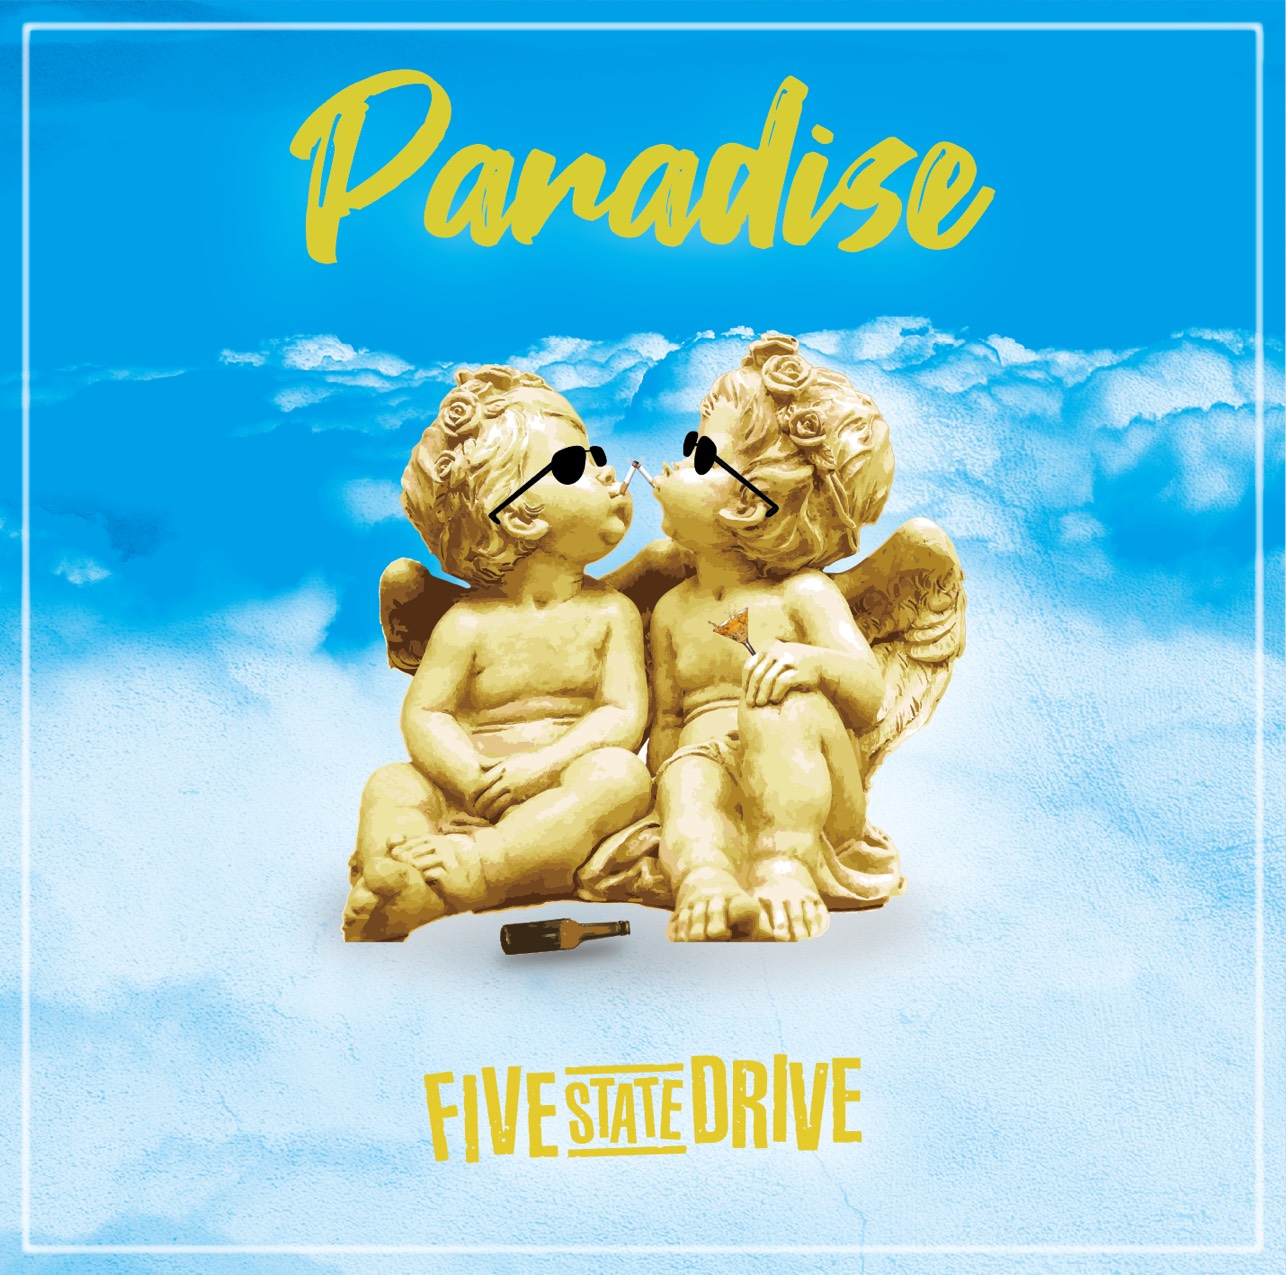 2nd Single “Paradise”